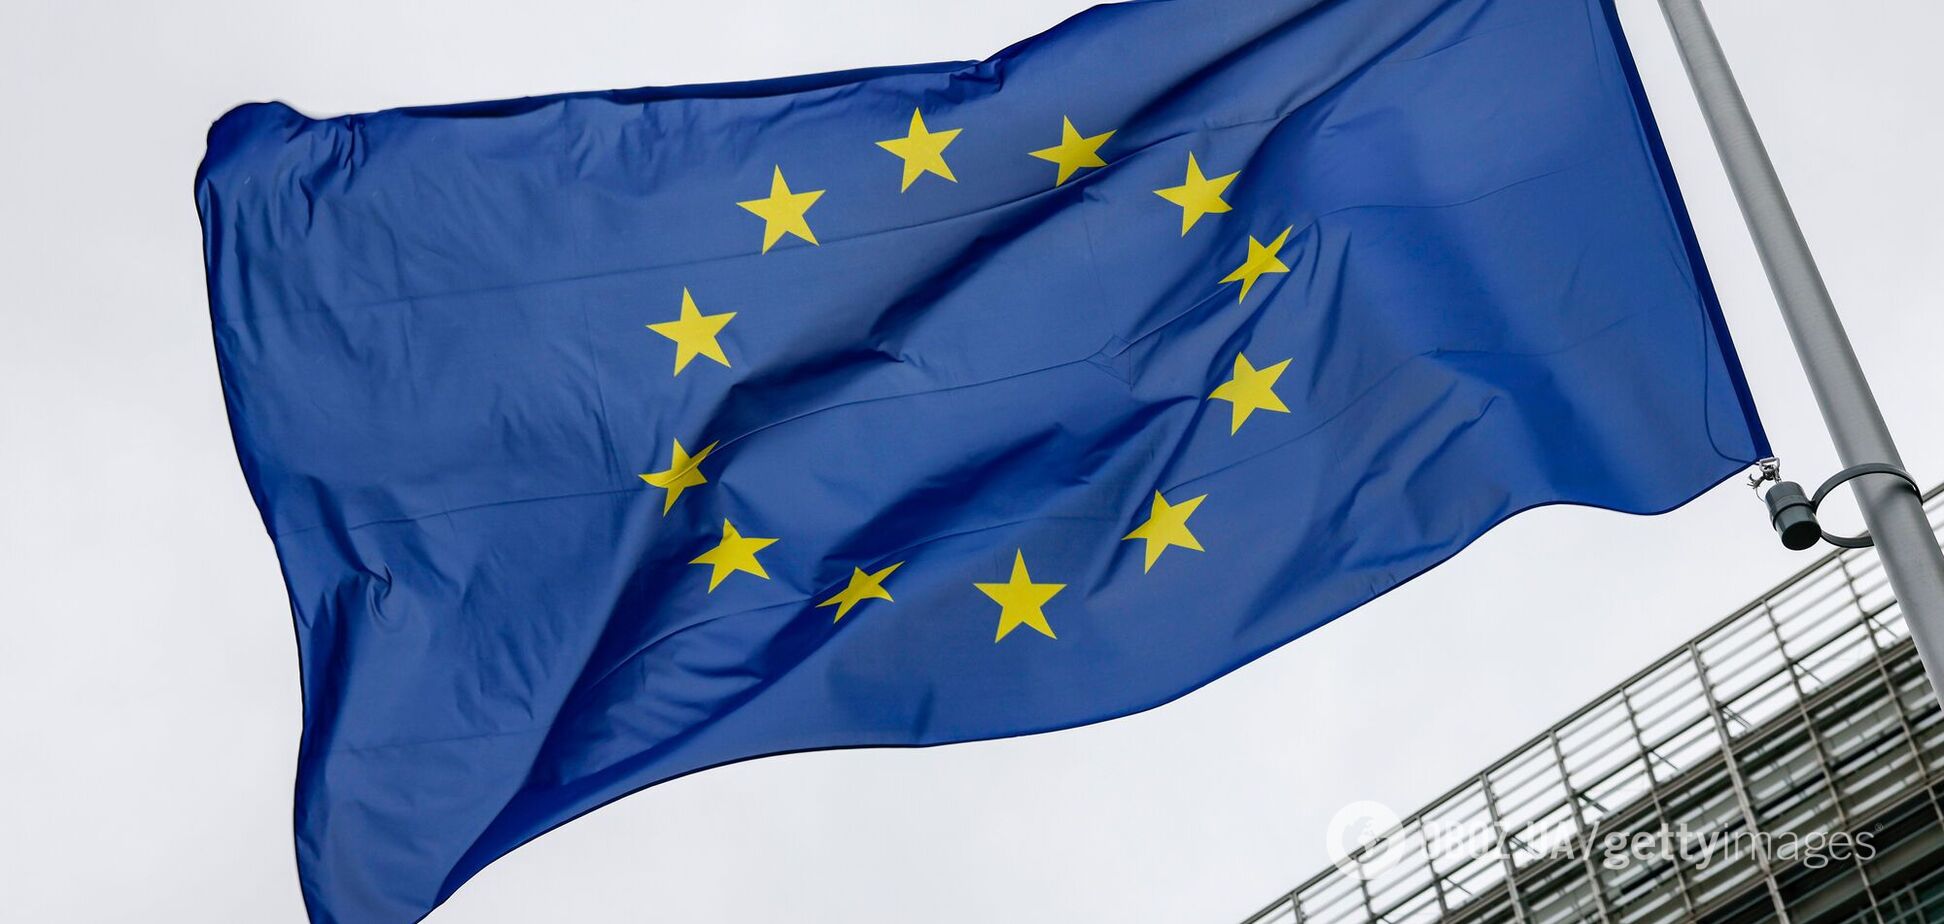 Нова загроза з Європи: потенційний успіх ультраправих на виборах може залишити Україну без фінансів, зброї та членства у ЄС